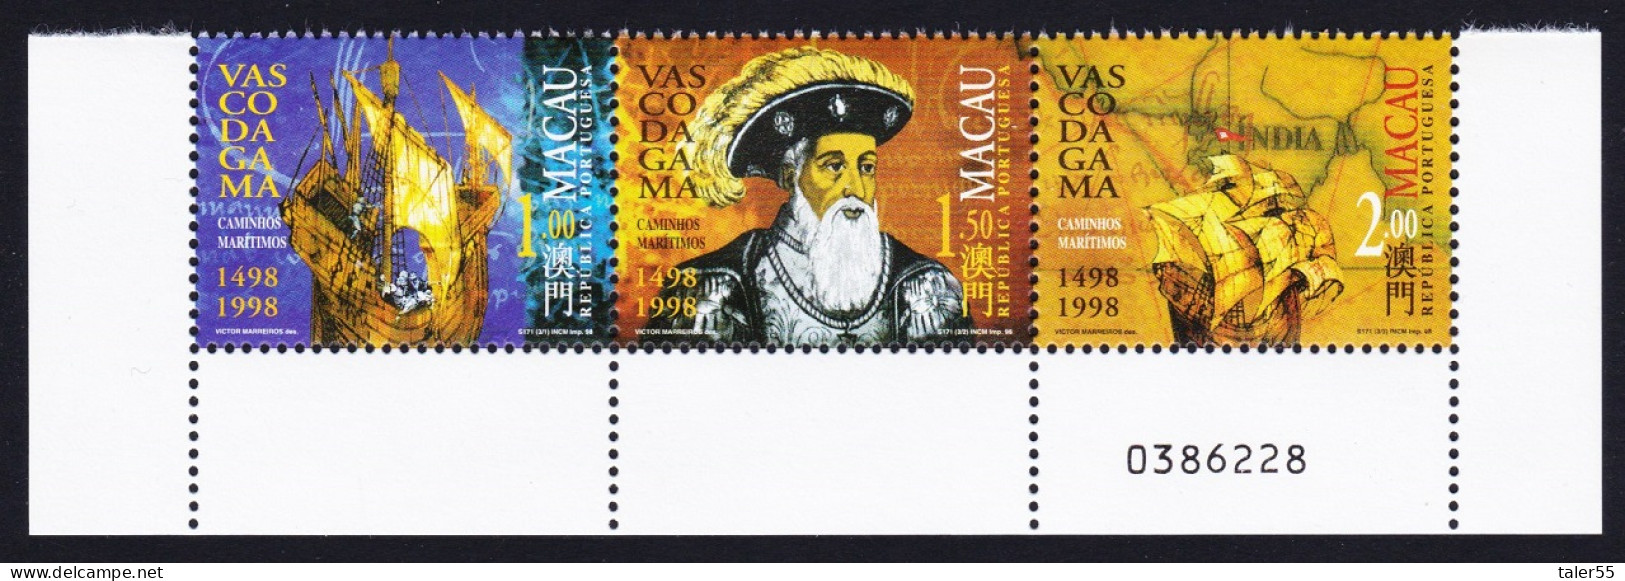 Macao Macau Vasco Da Gama 1498 Strip Of 3v Control Number 1998 MNH SG#1044-1046 Sc#943-946 - Ongebruikt